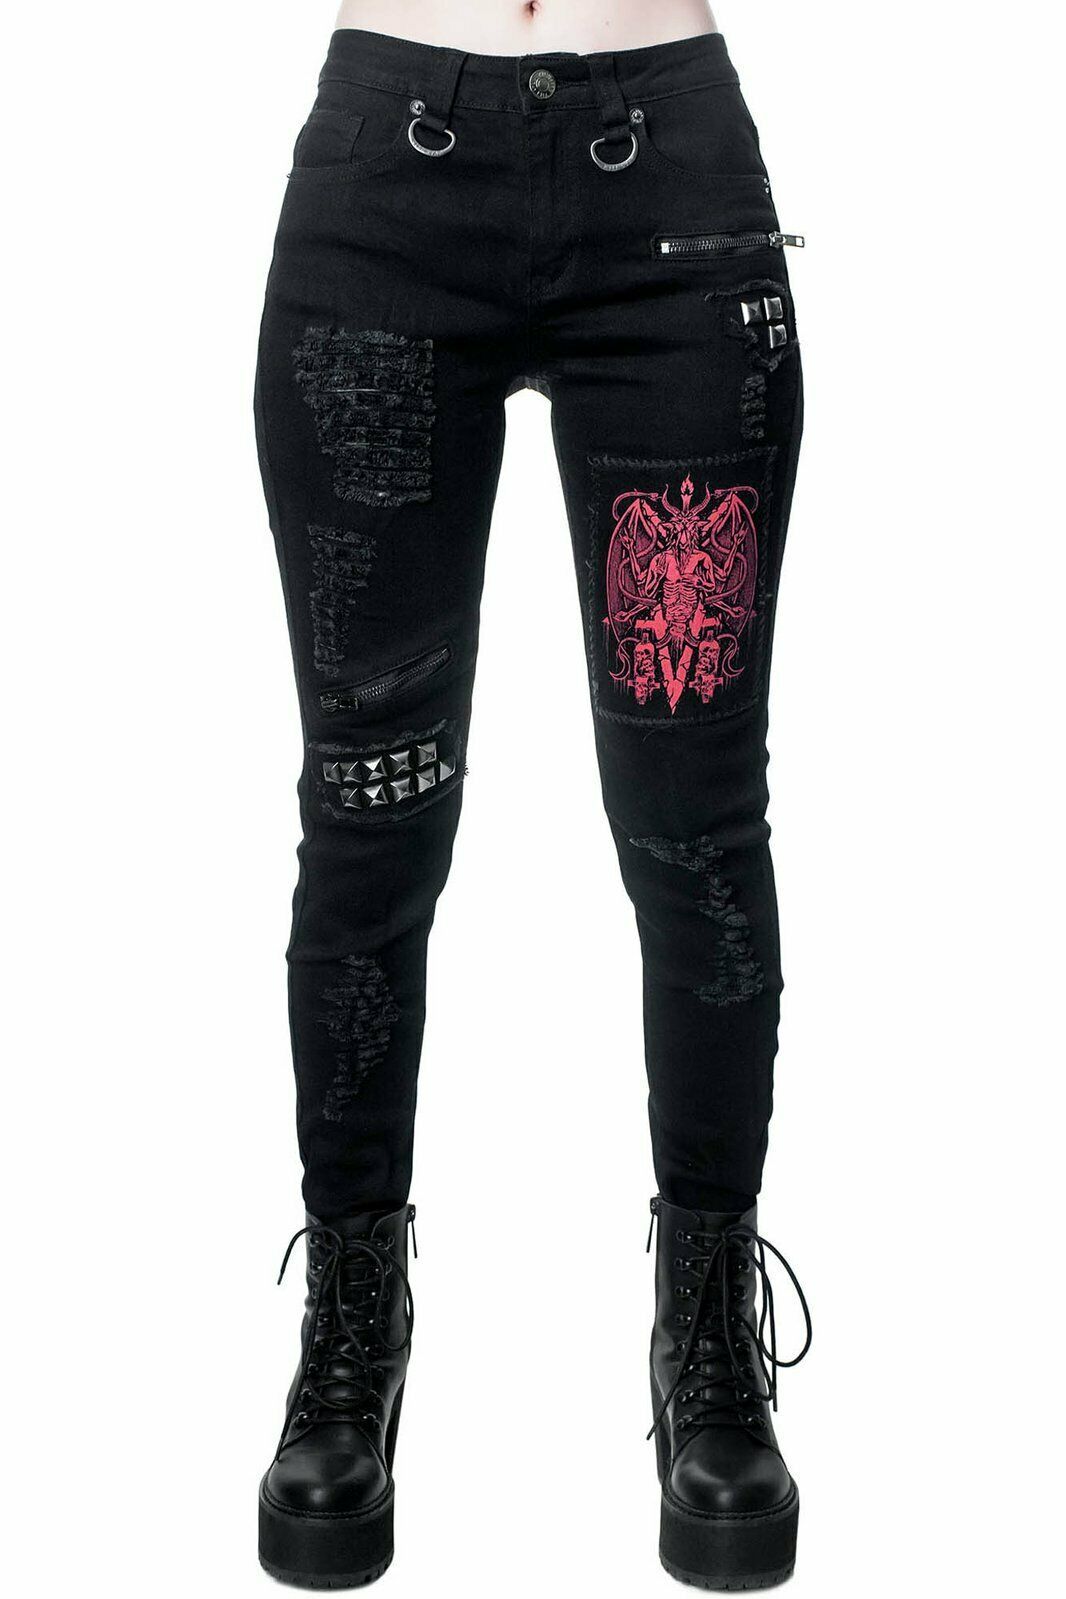 Killstar Forsaken Baphomet Satanic Gothic Punk Ripped Studded Jeans ...